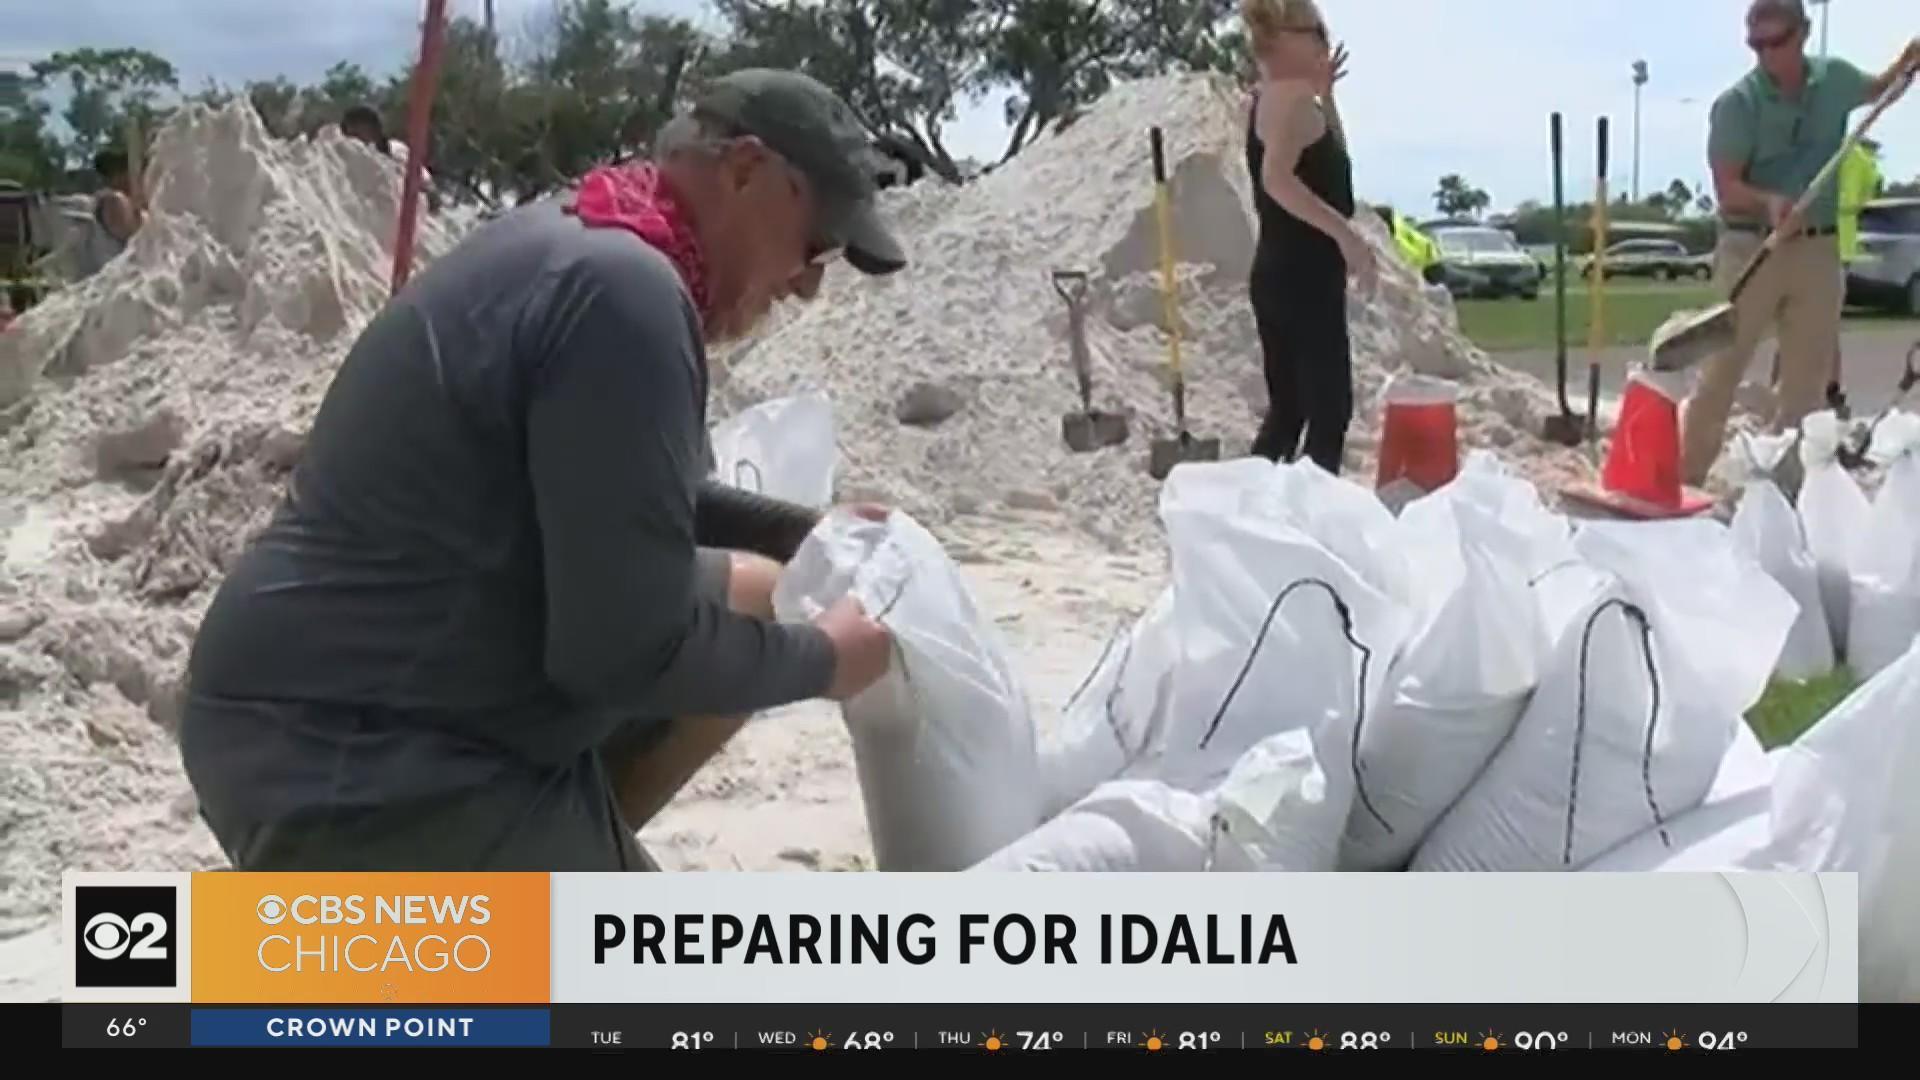 Pictures: Preparing for Idalia